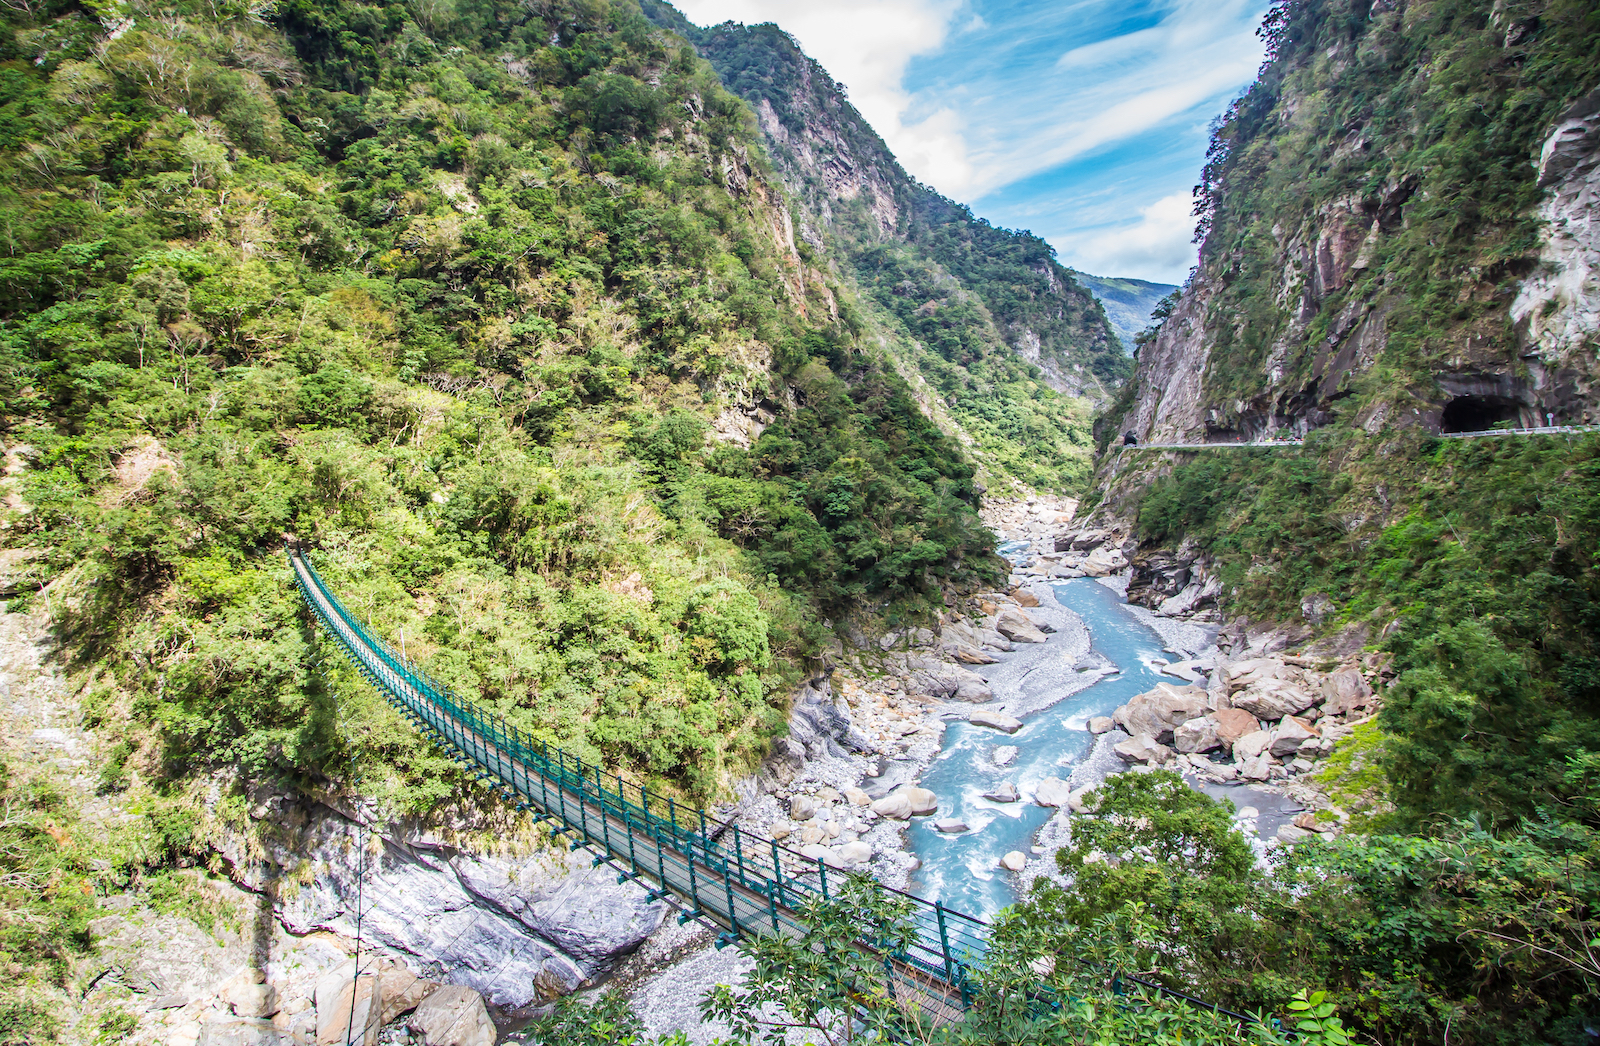 台湾八景のひとつ「太魯閣渓谷」に行ってみたい